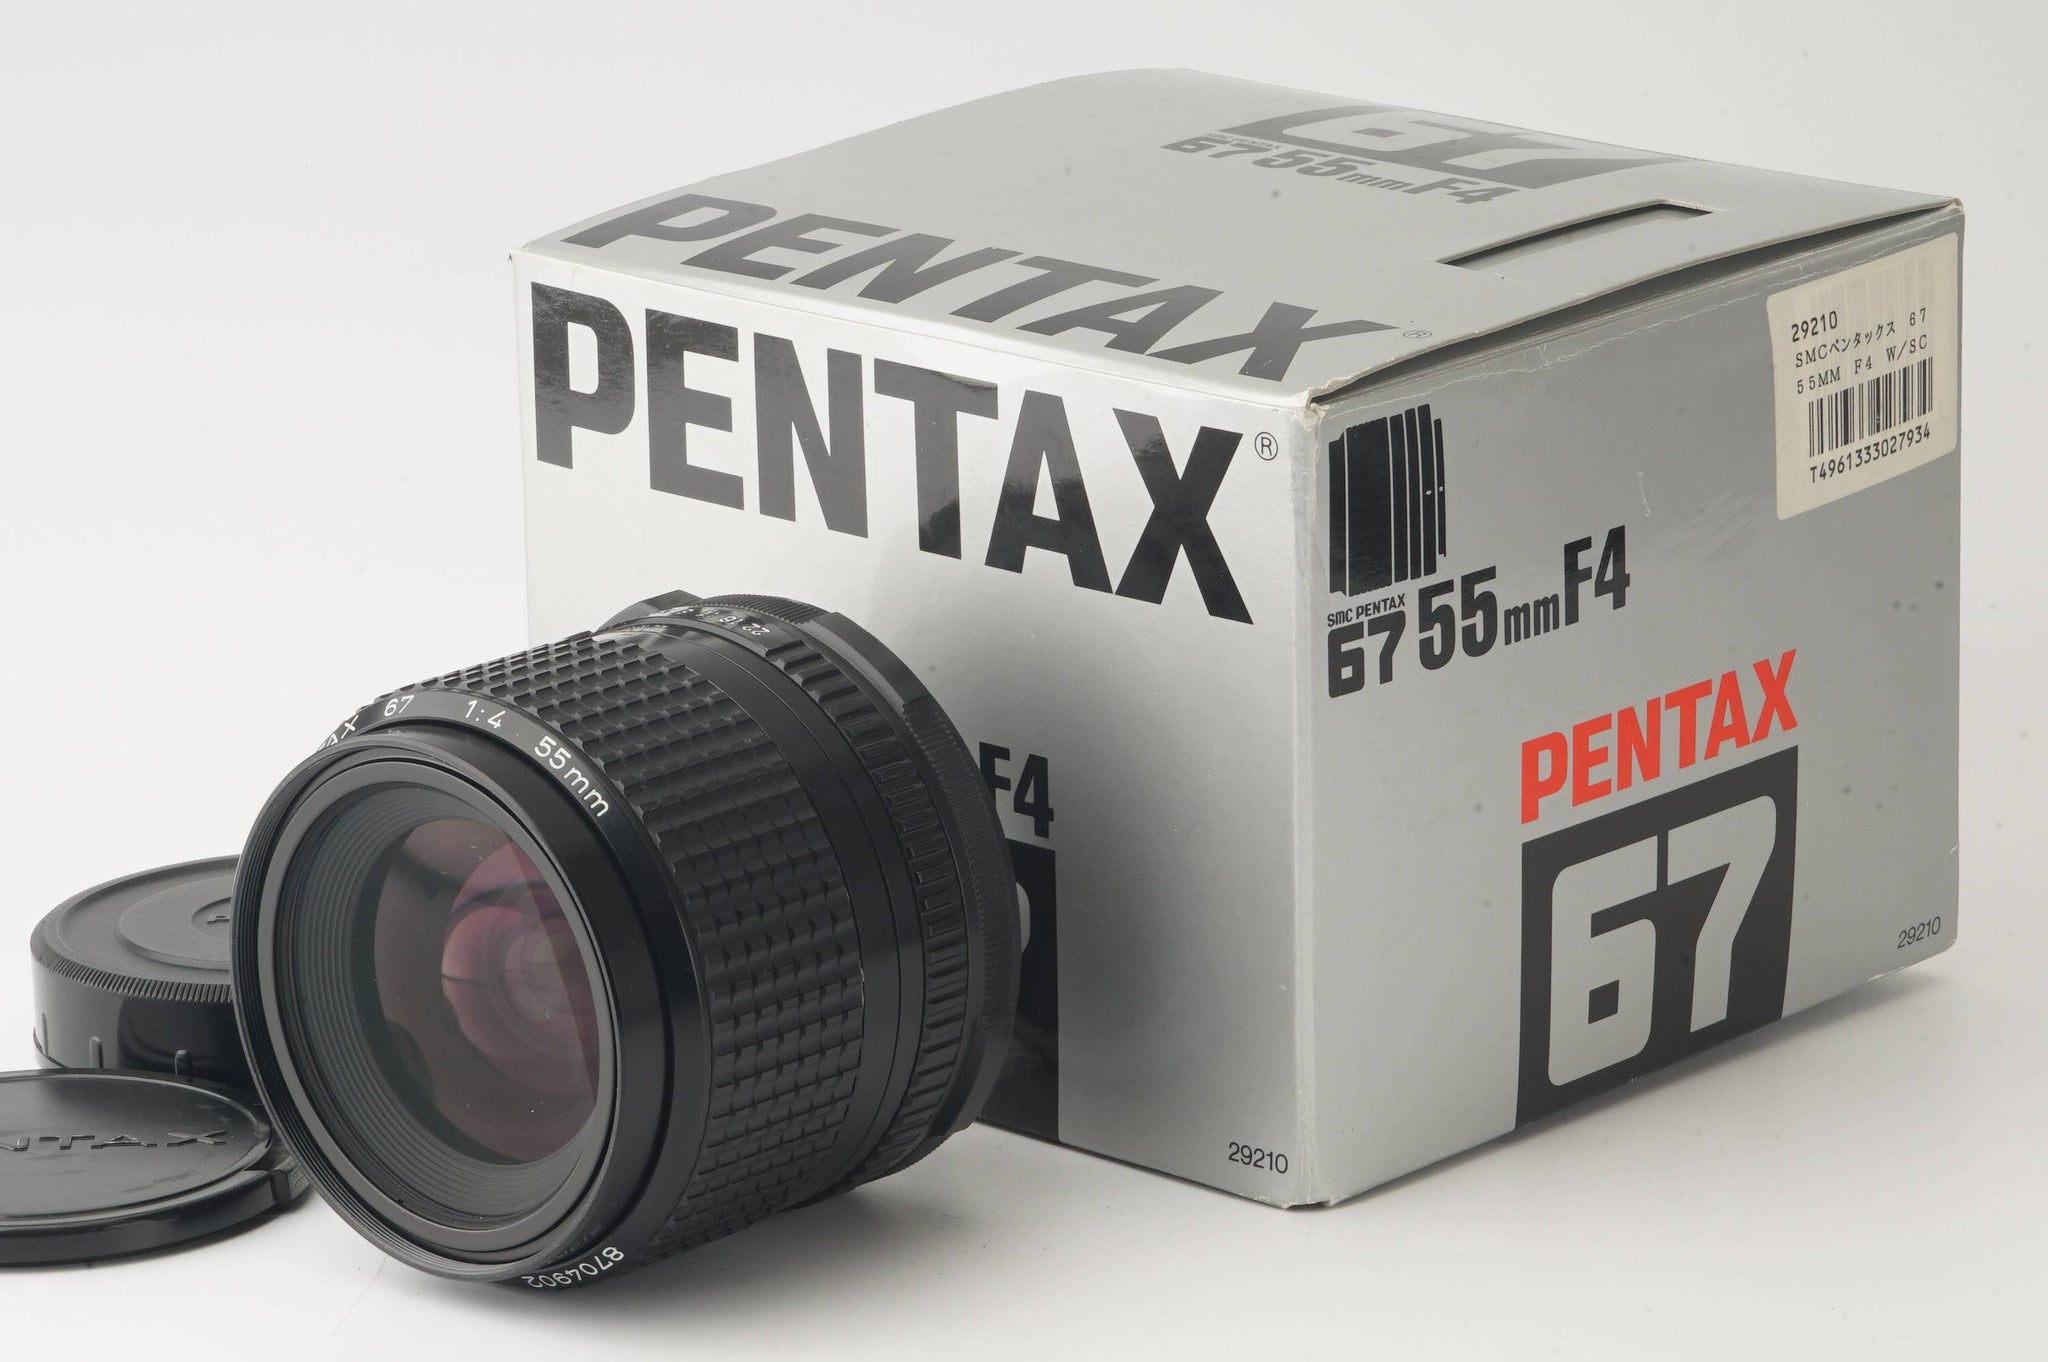 ペンタックス 55mm f/4 レンズ 中判カメラ - カメラ